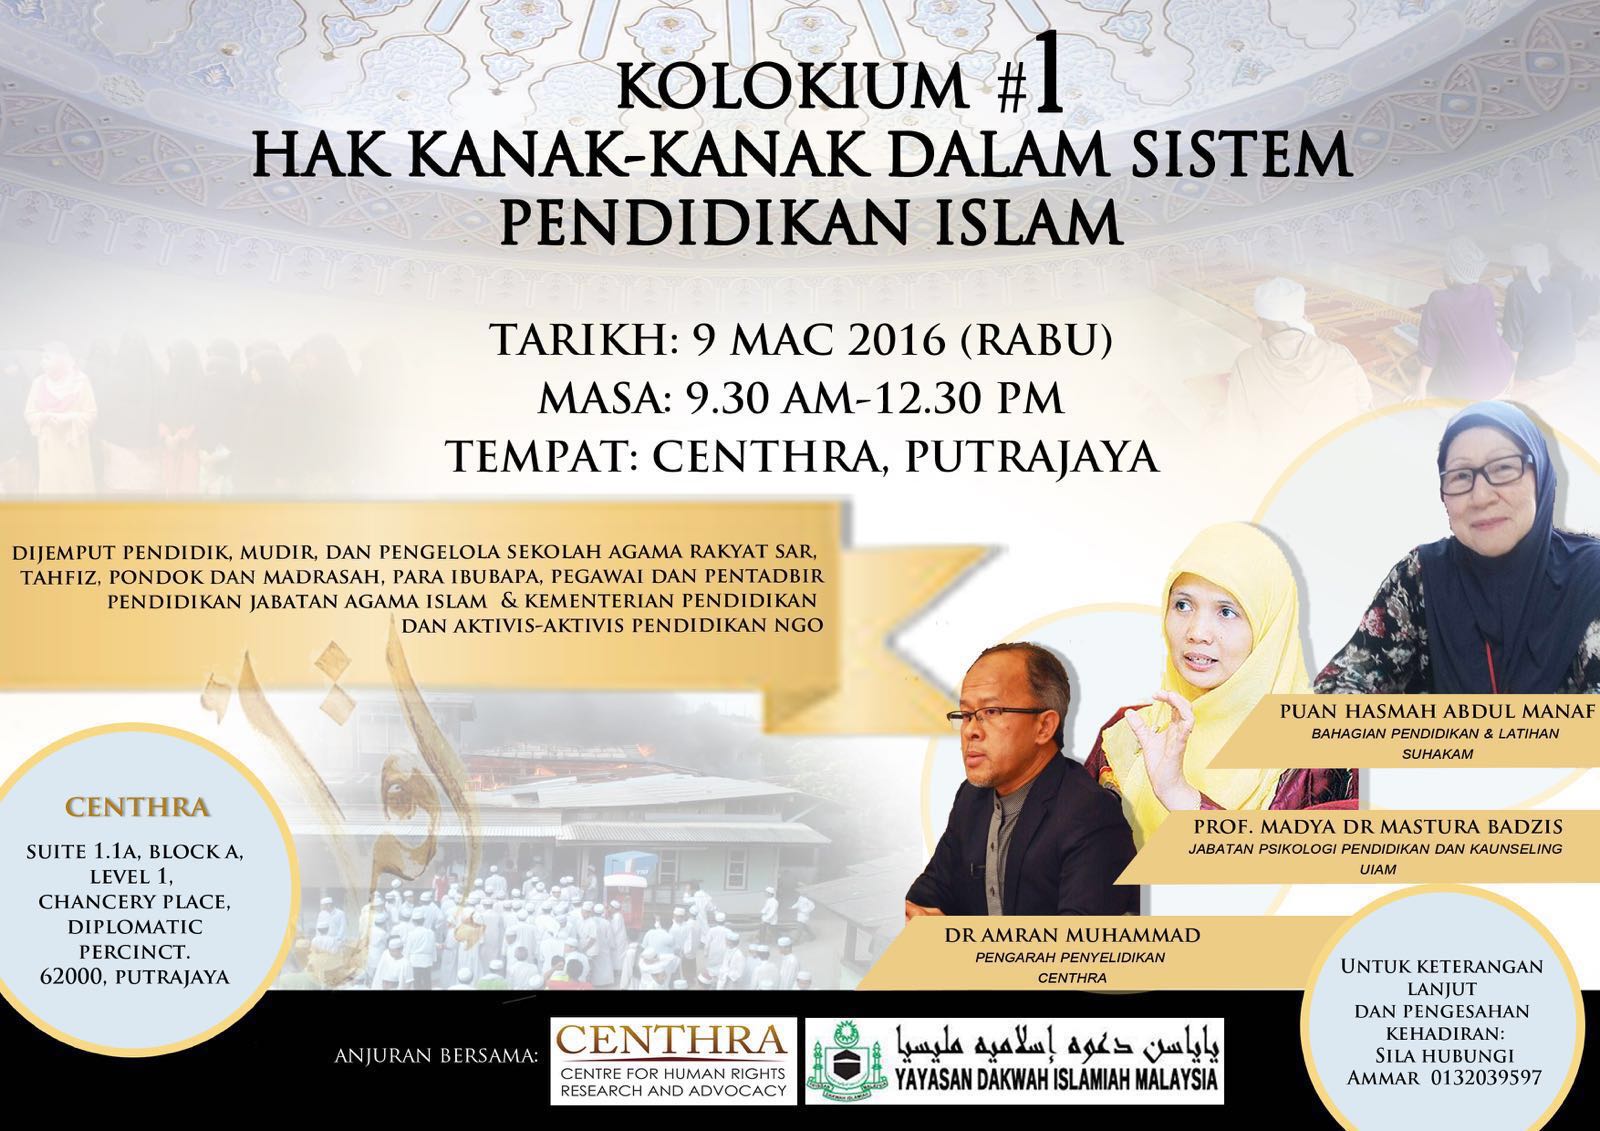 Kolokium #1 Hak Kanak-Kanak Dalam Sistem Pendidikan Islam